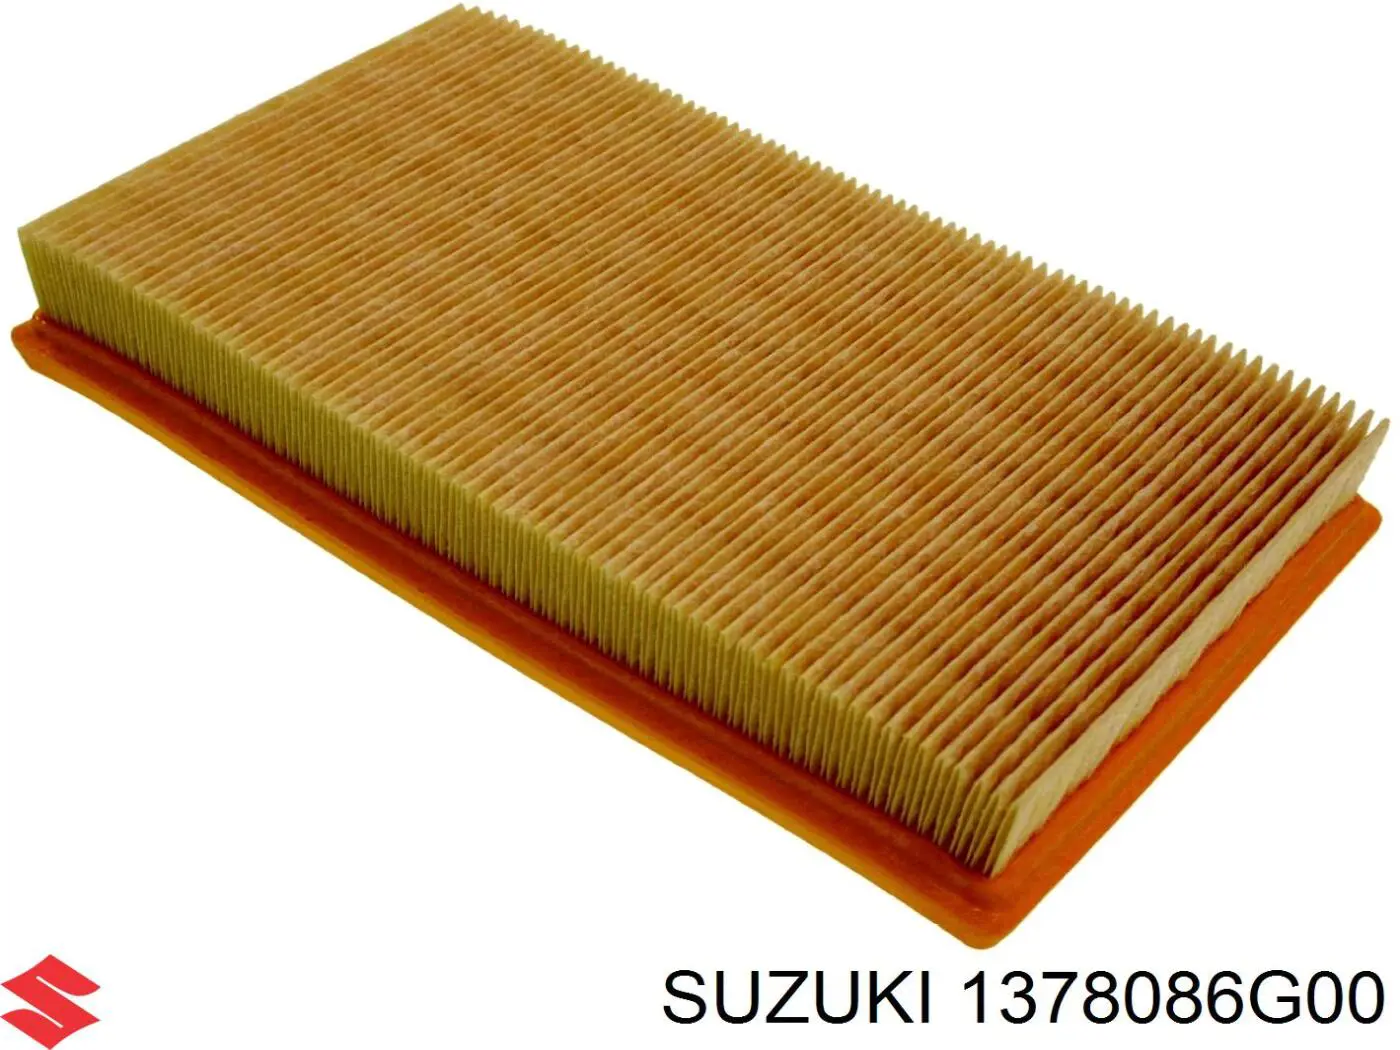 1378086G00 Suzuki filtro de aire